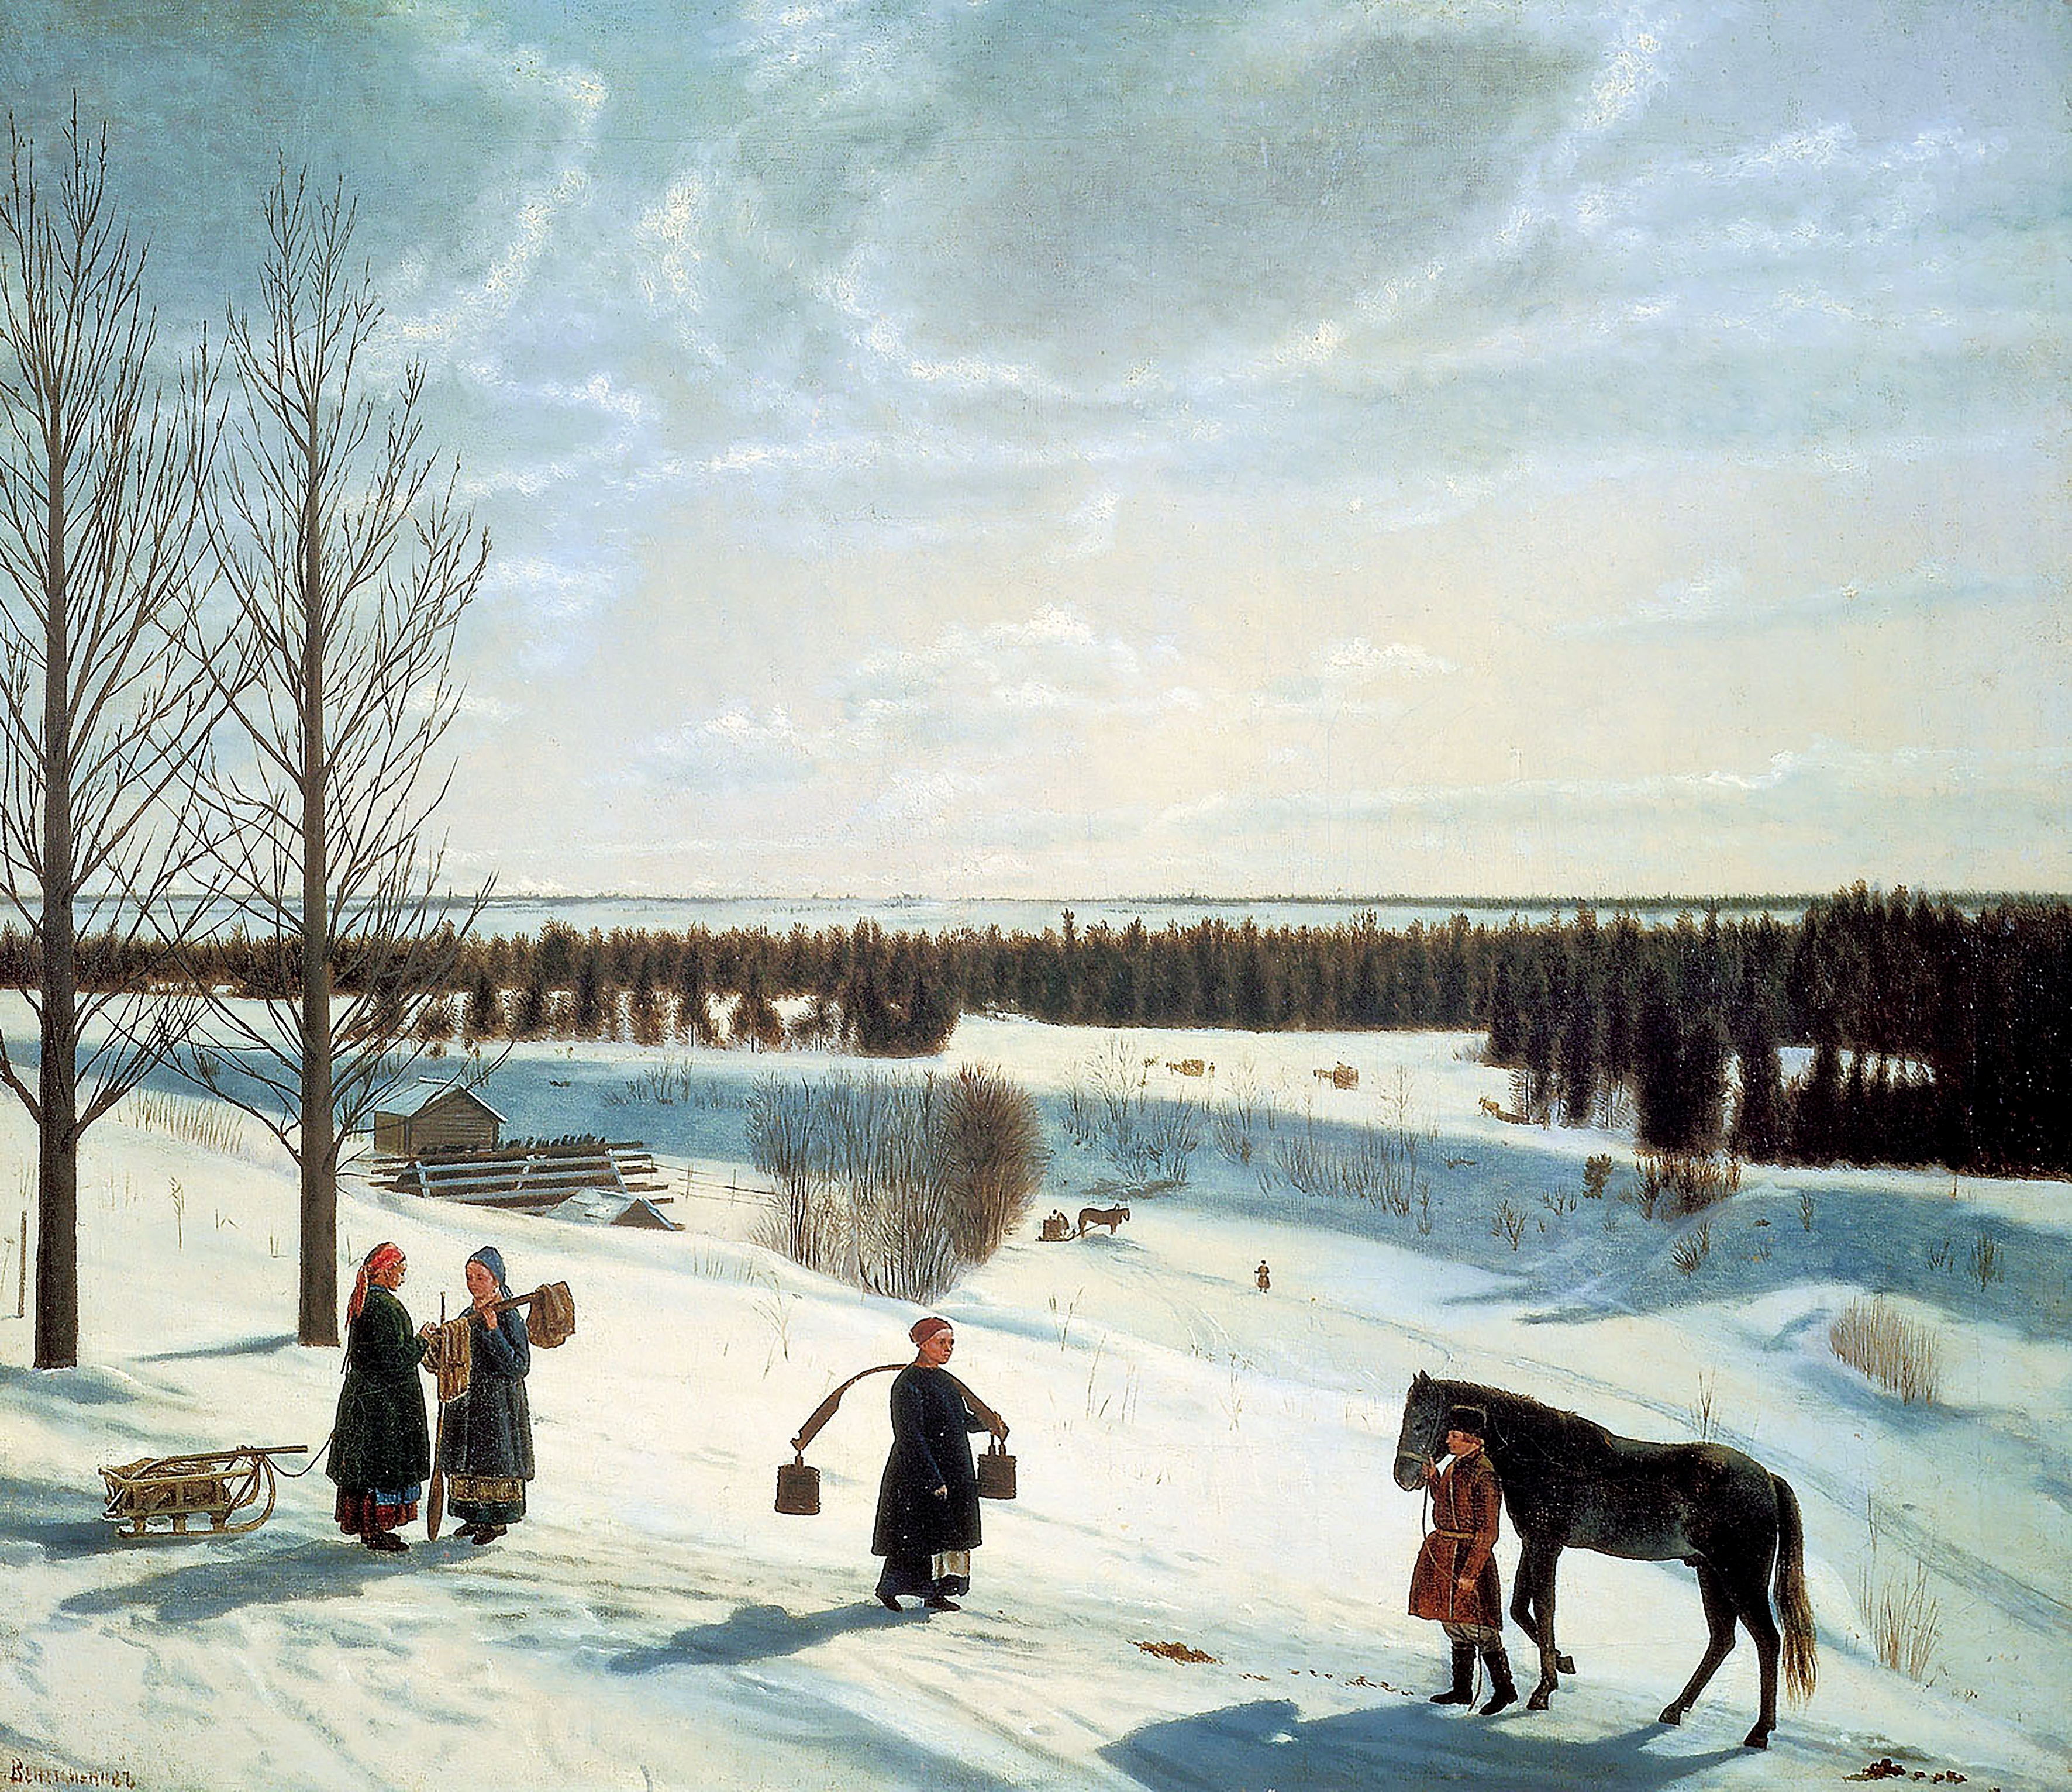 Зимний пейзаж (русская зима), Никифор Степанович Крылов, 1827